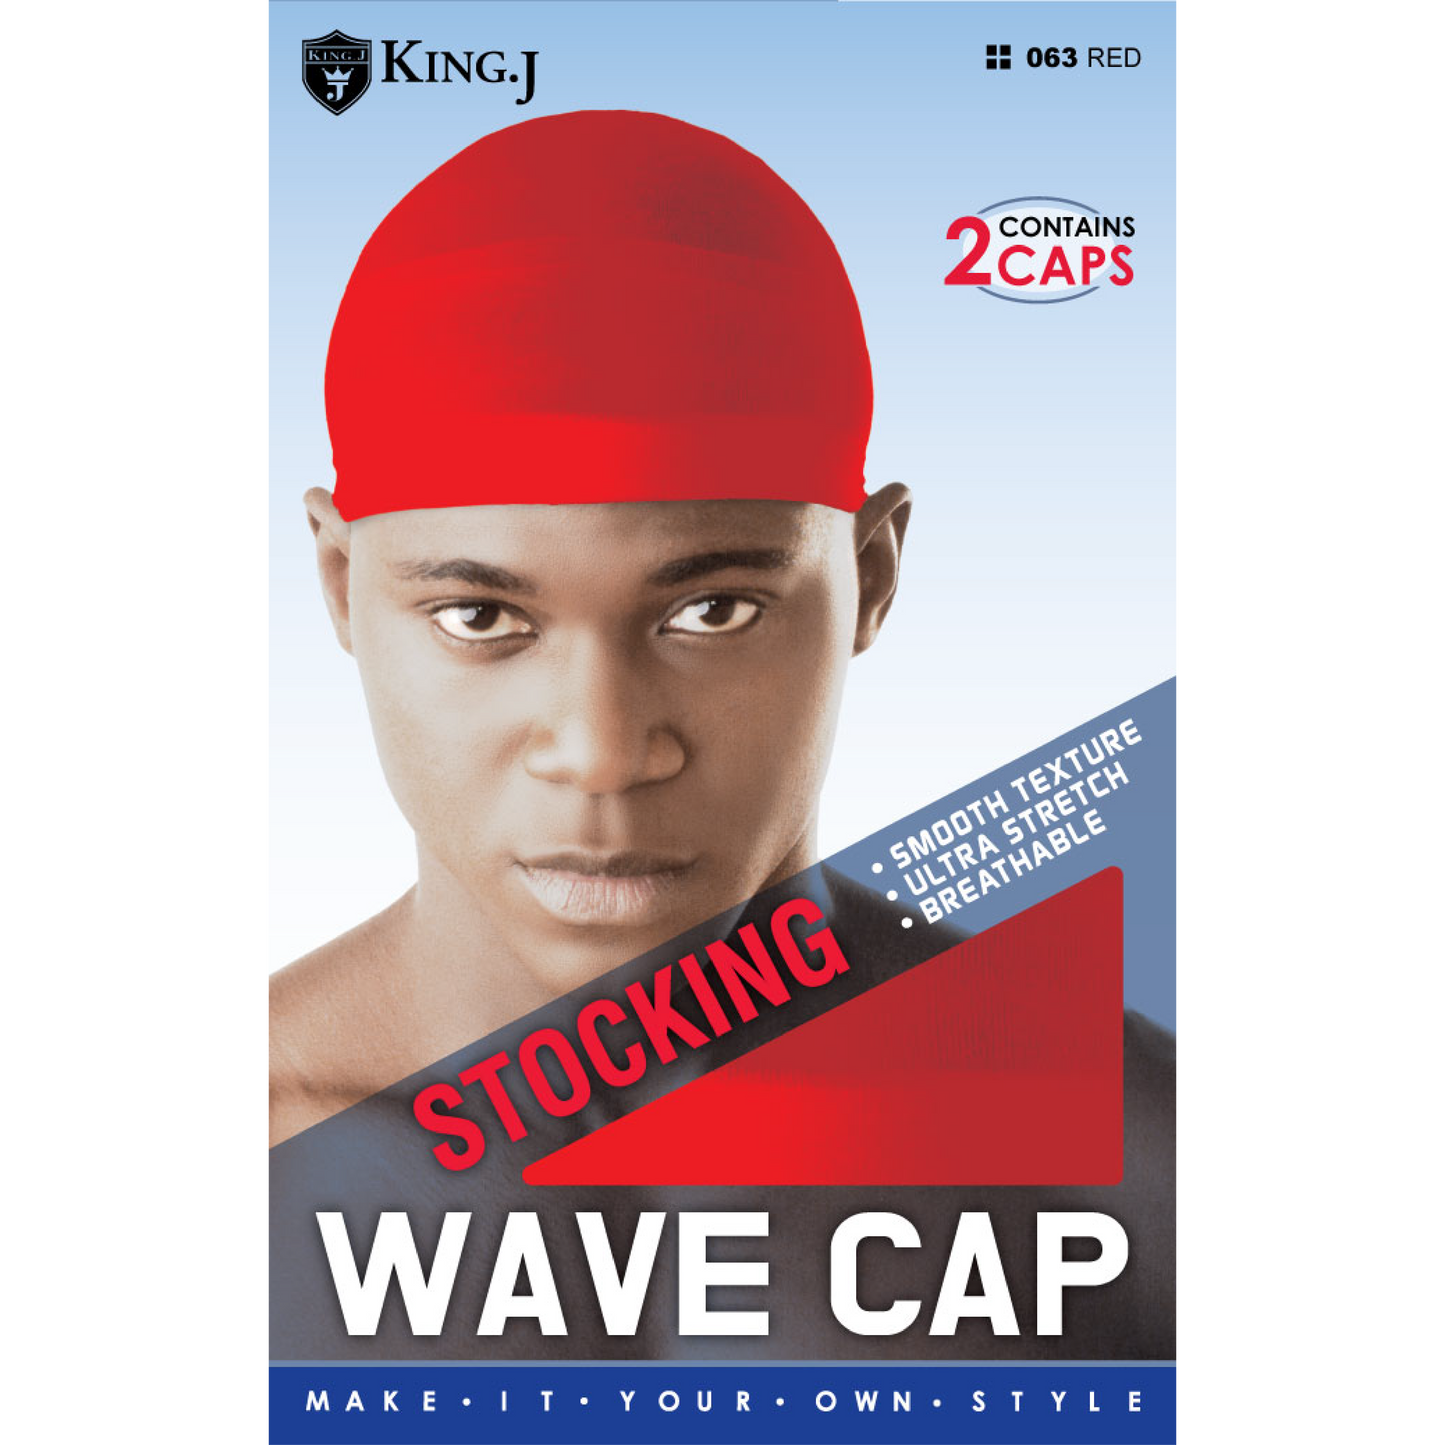 Wave cap